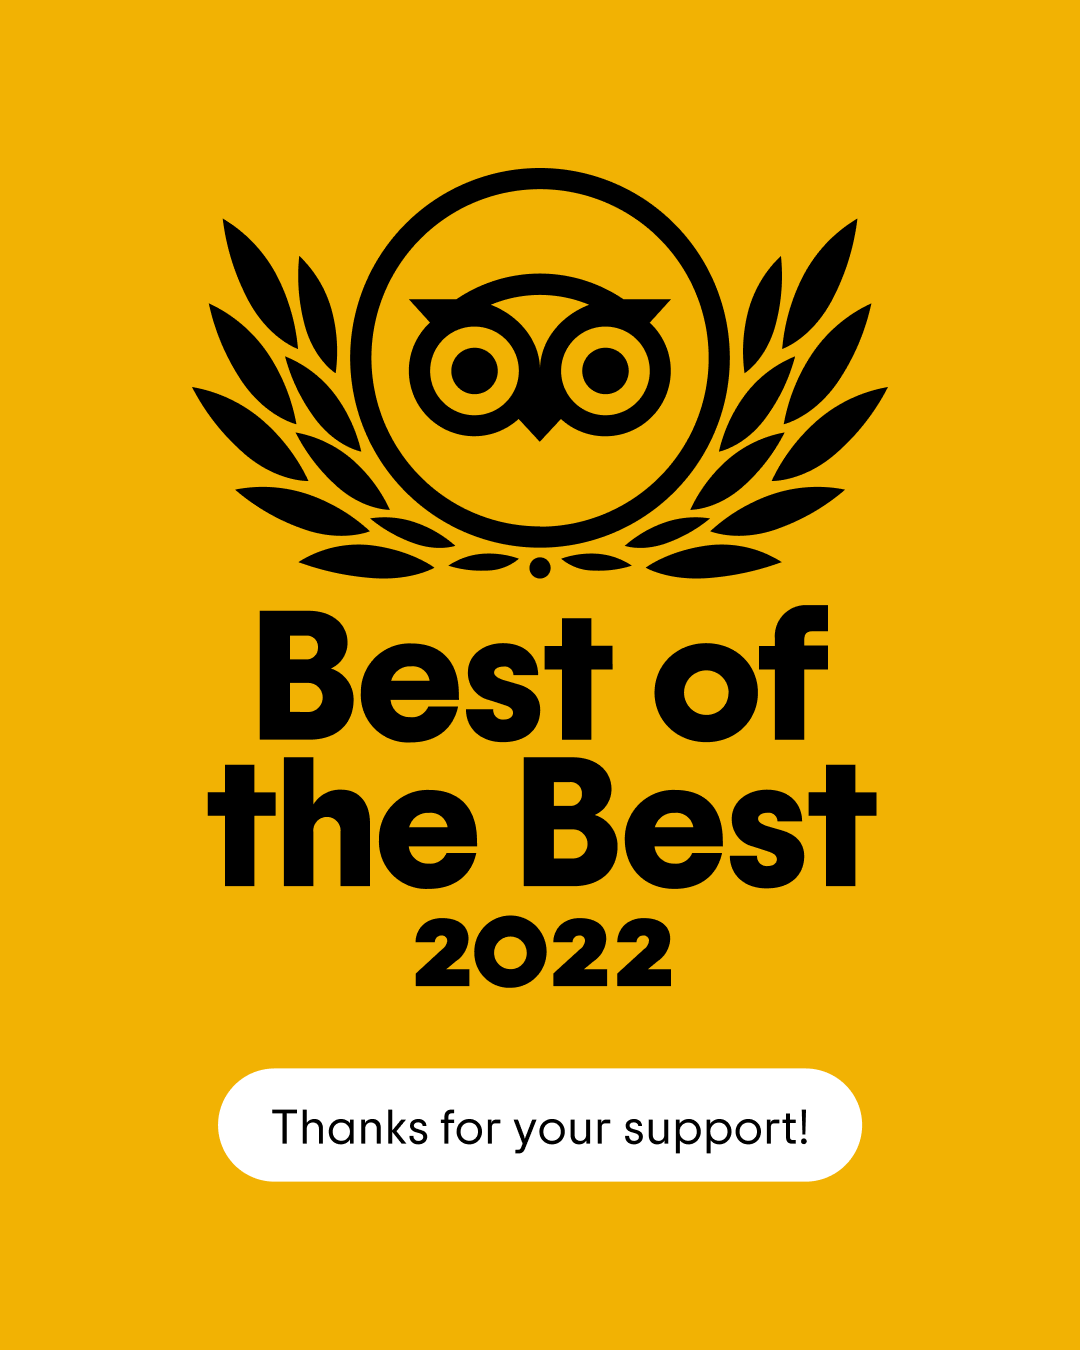 Trip Advisor Best of the Best Award 2022